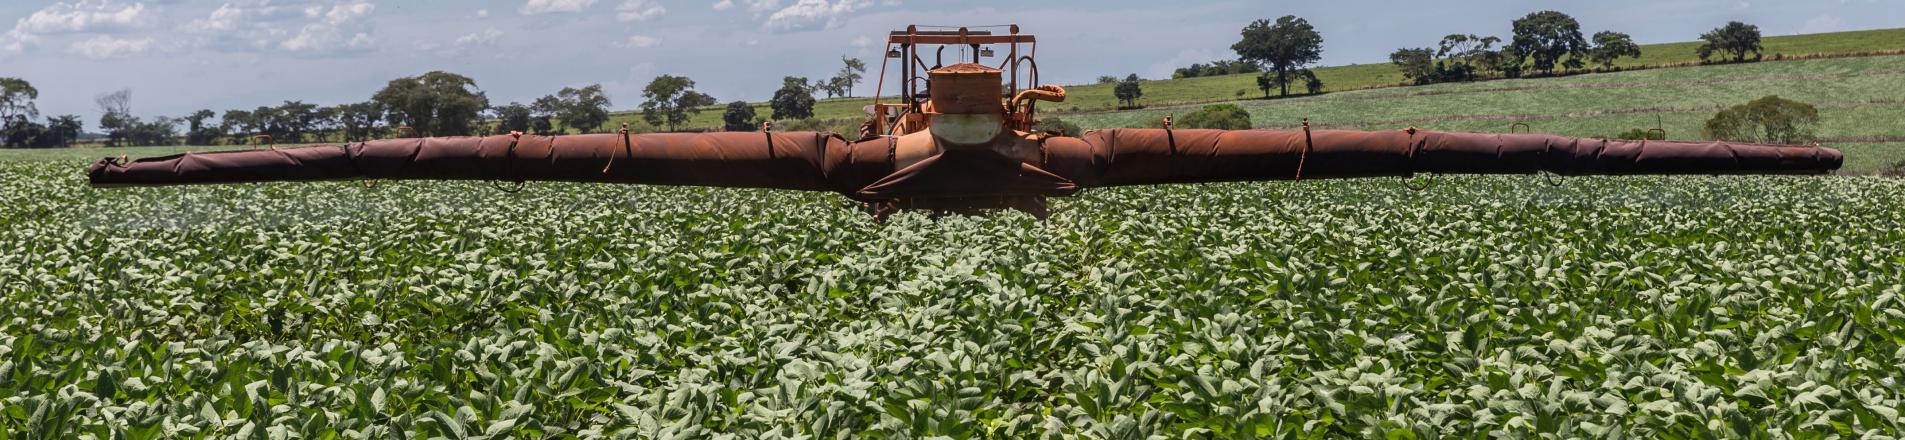 brazilian farmer applies pesticide to soybean